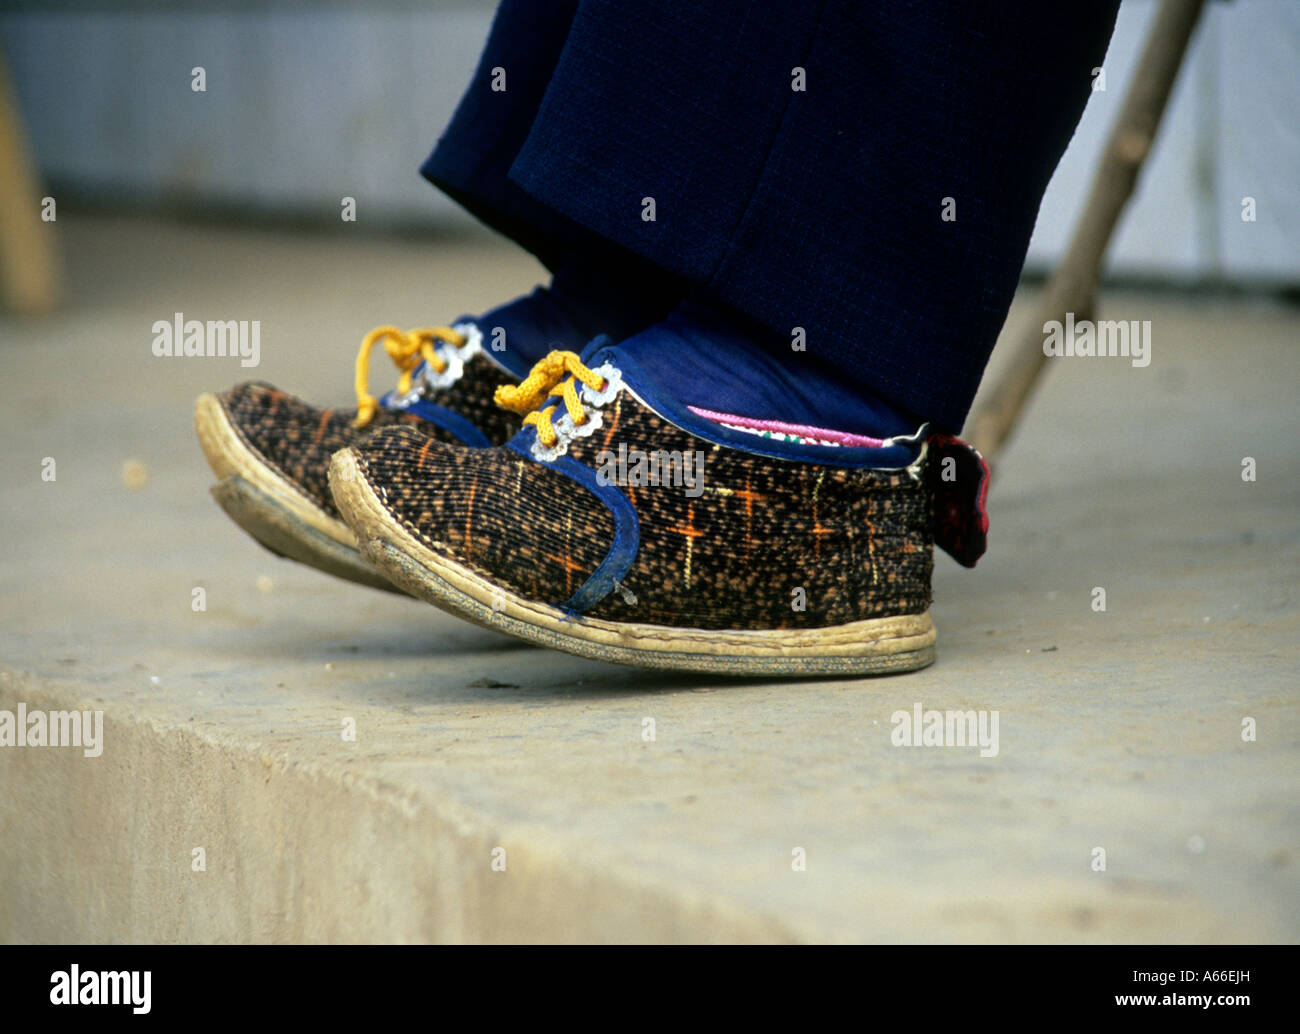 Spezielle kleine Schuhe mit den gefesselten Füße in einer alten Frau in Yunnan, China. Siehe auch Alamy Ref A66EHY und A66EHW Stockfoto